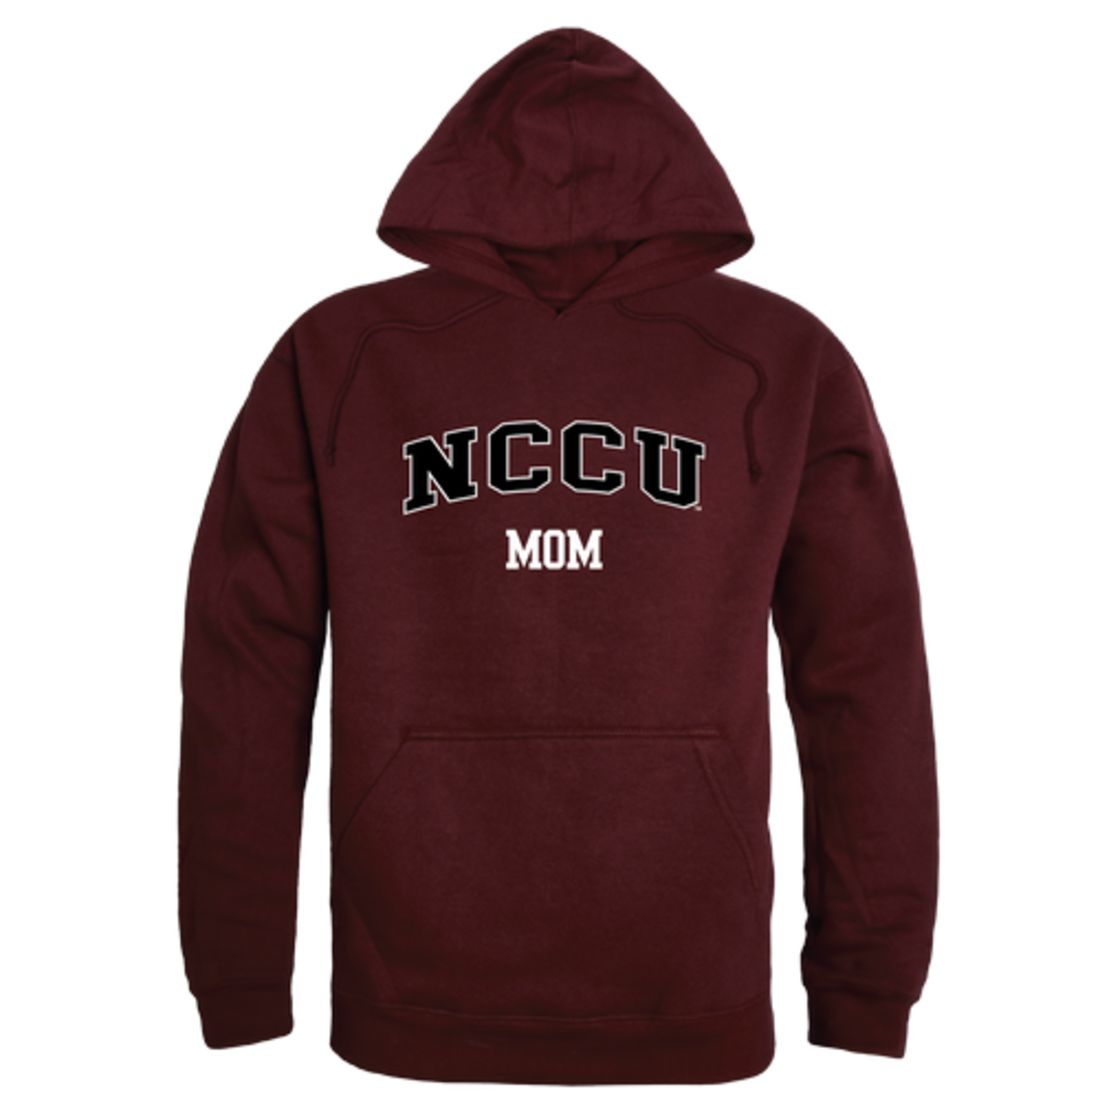 NCCU North Carolina Central University Eagles Mom Fleece Hoodie Sweatshirts Heather Grey-Campus-Wardrobe